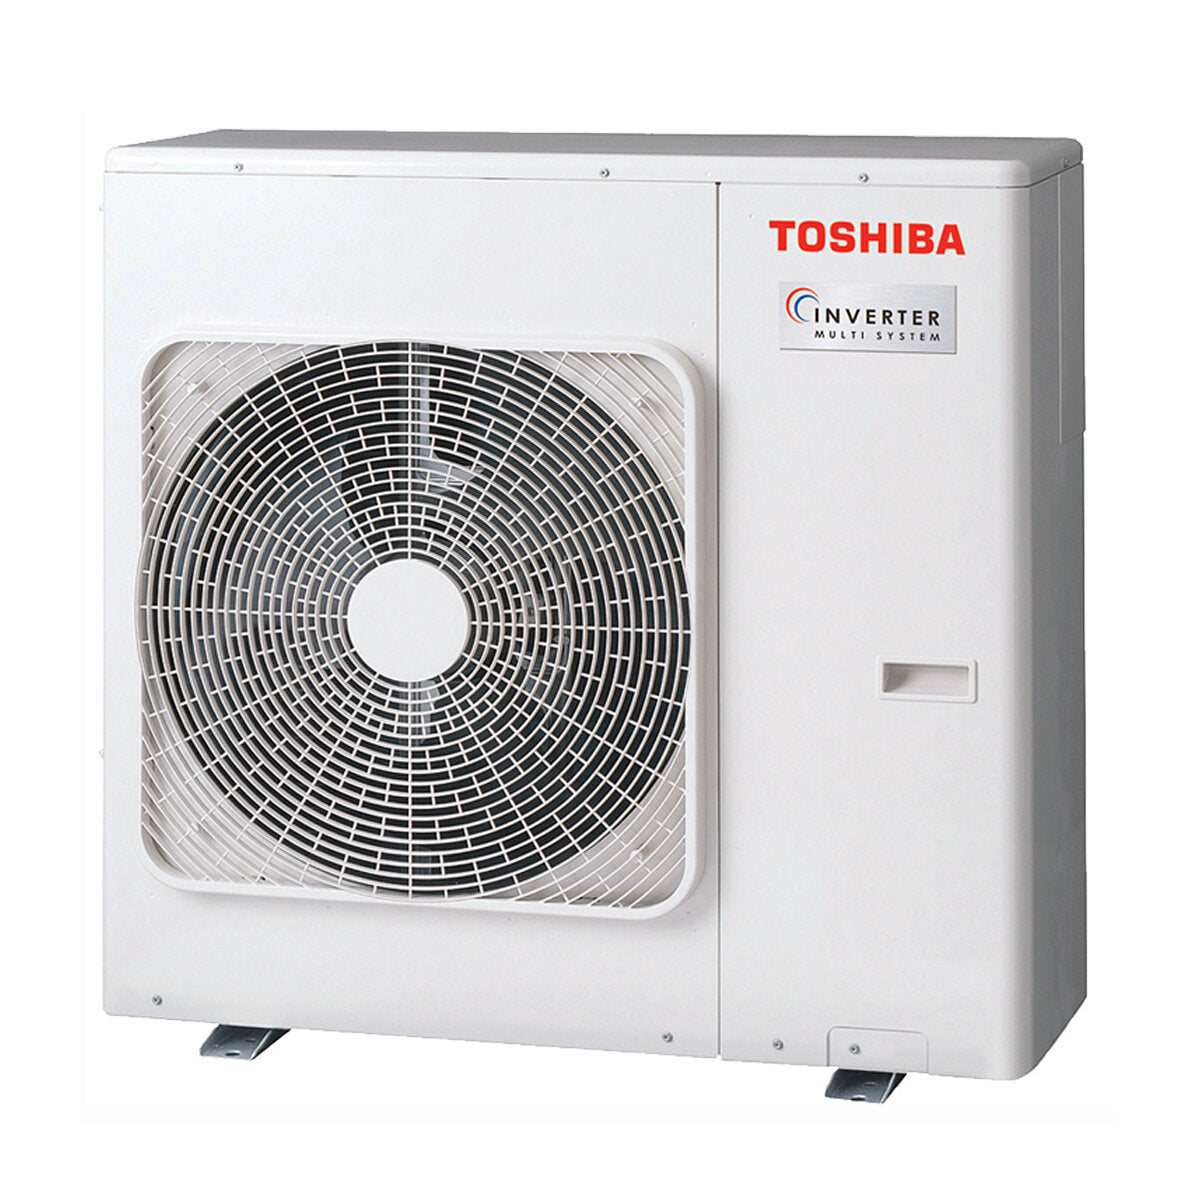 Toshiba Ductable Air Conditioner U2 Penta Split 7000 + 7000 + 7000 + 9000 + 9000 BTU Inverter A++ Außengerät 10,0 kW